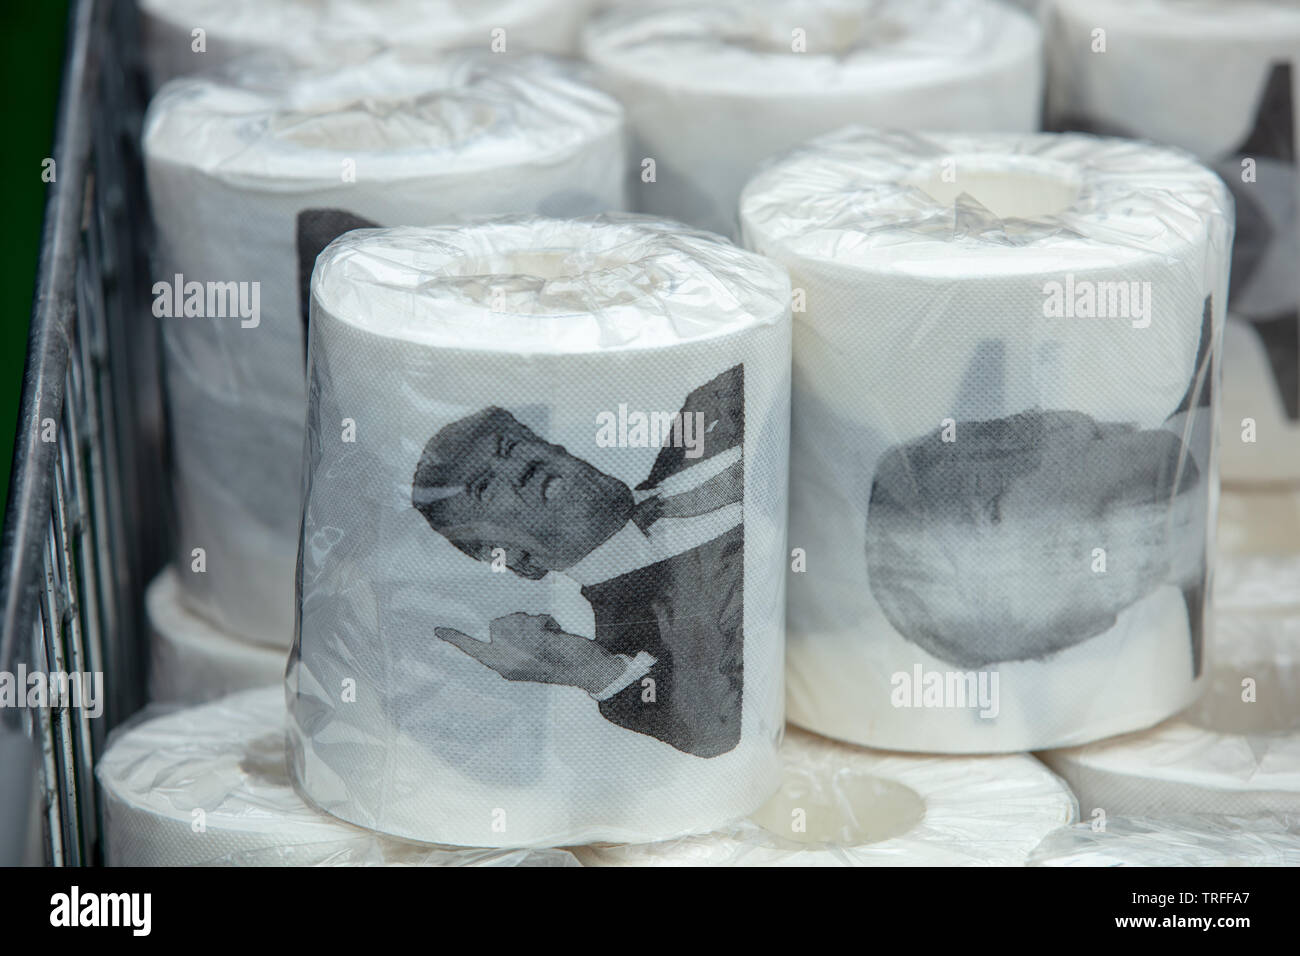 Londres, Royaume-Uni. 4 juin 2019. Papier toilette Donal Trump à vendre le jour où des manifestants ont manifesté dans le centre de Londres sur Trafalgar Square contre le président des États-Unis, Donald Trump, en visite au Royaume-Uni. Crédit: Joe Kuis / Alay Banque D'Images